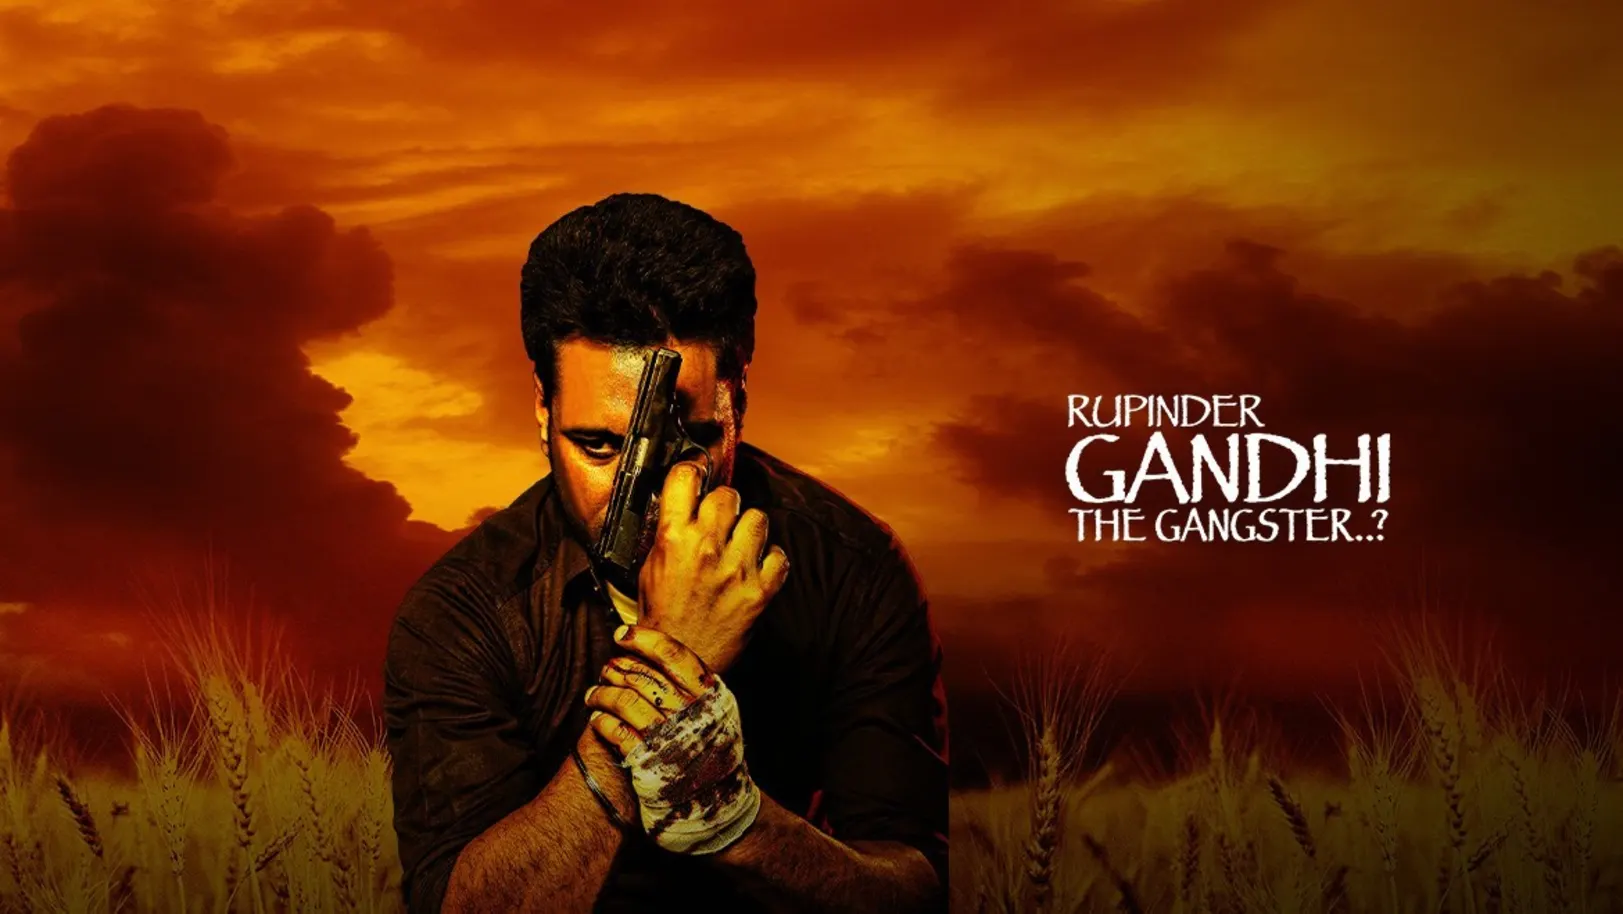 Rupinder Gandhi The Gangster…? Movie